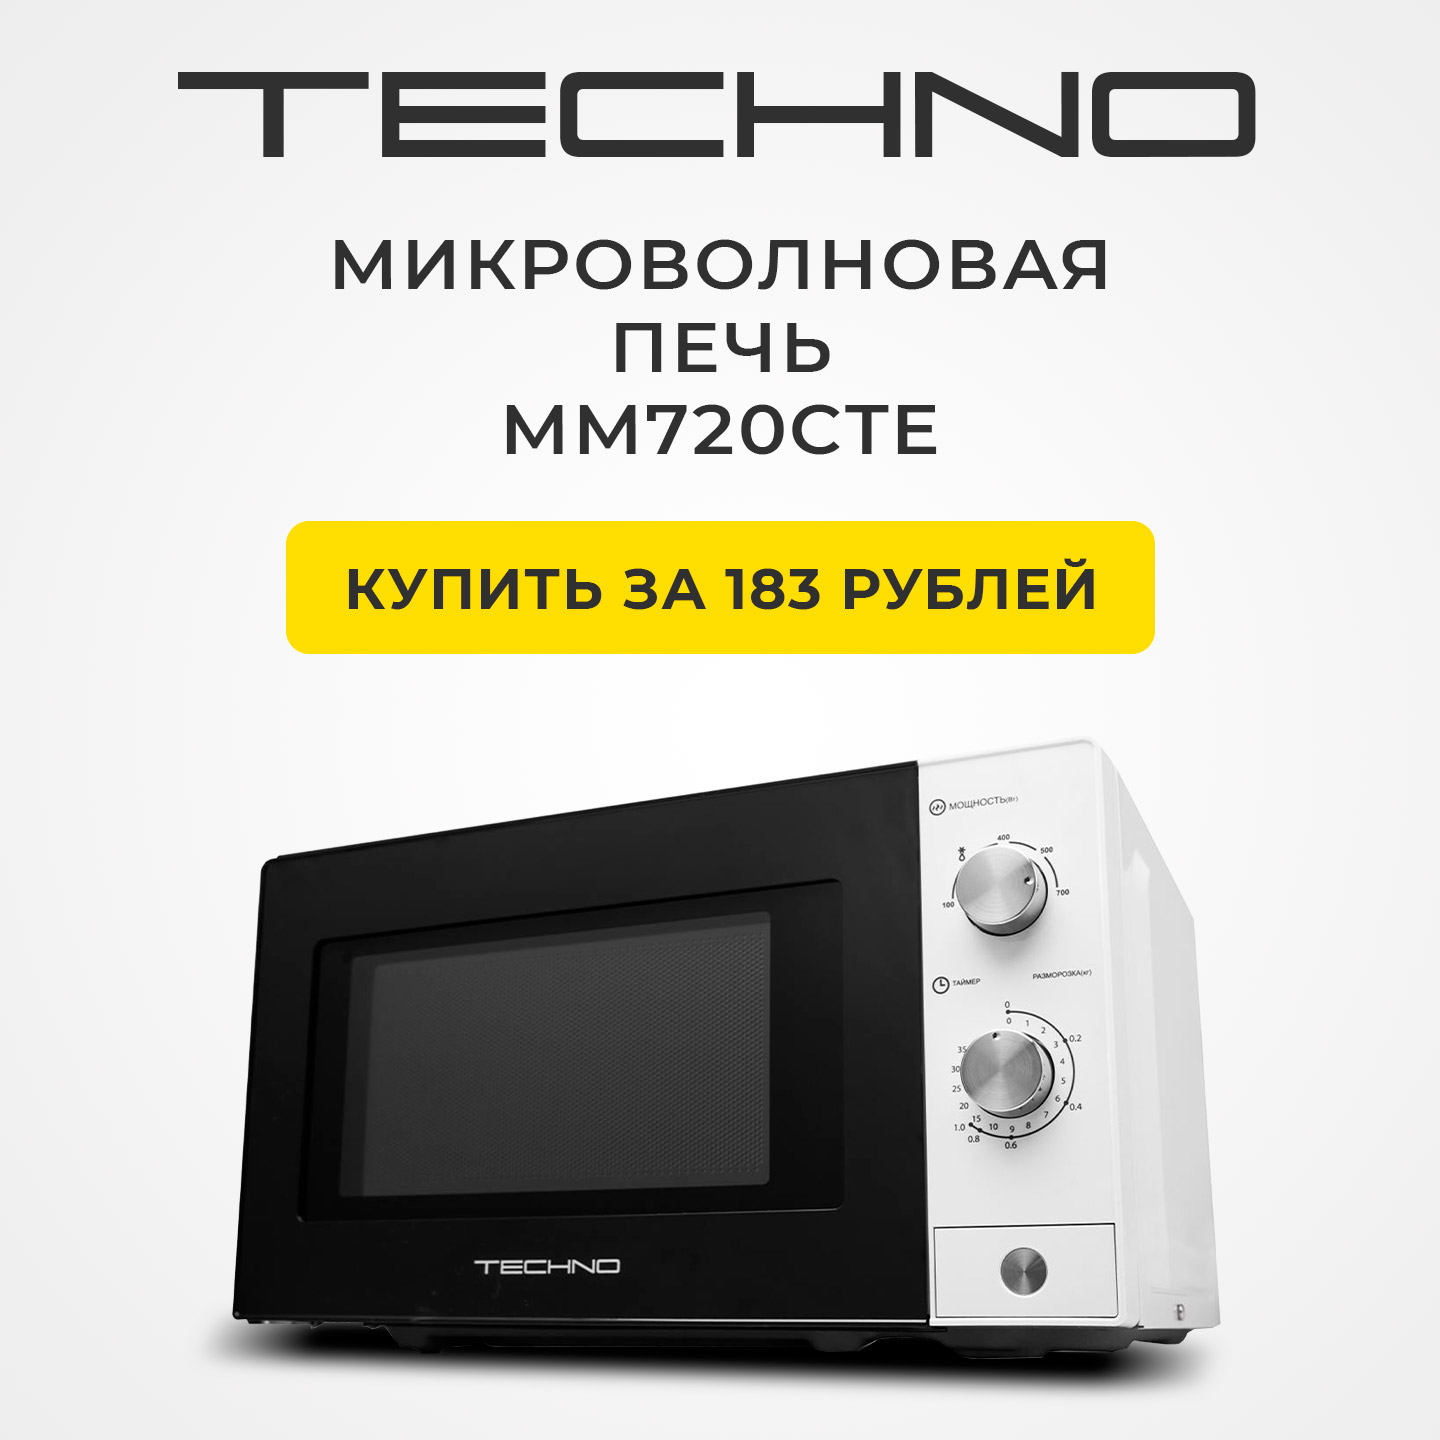 Микроволновая печь TECHNO MM720CP2